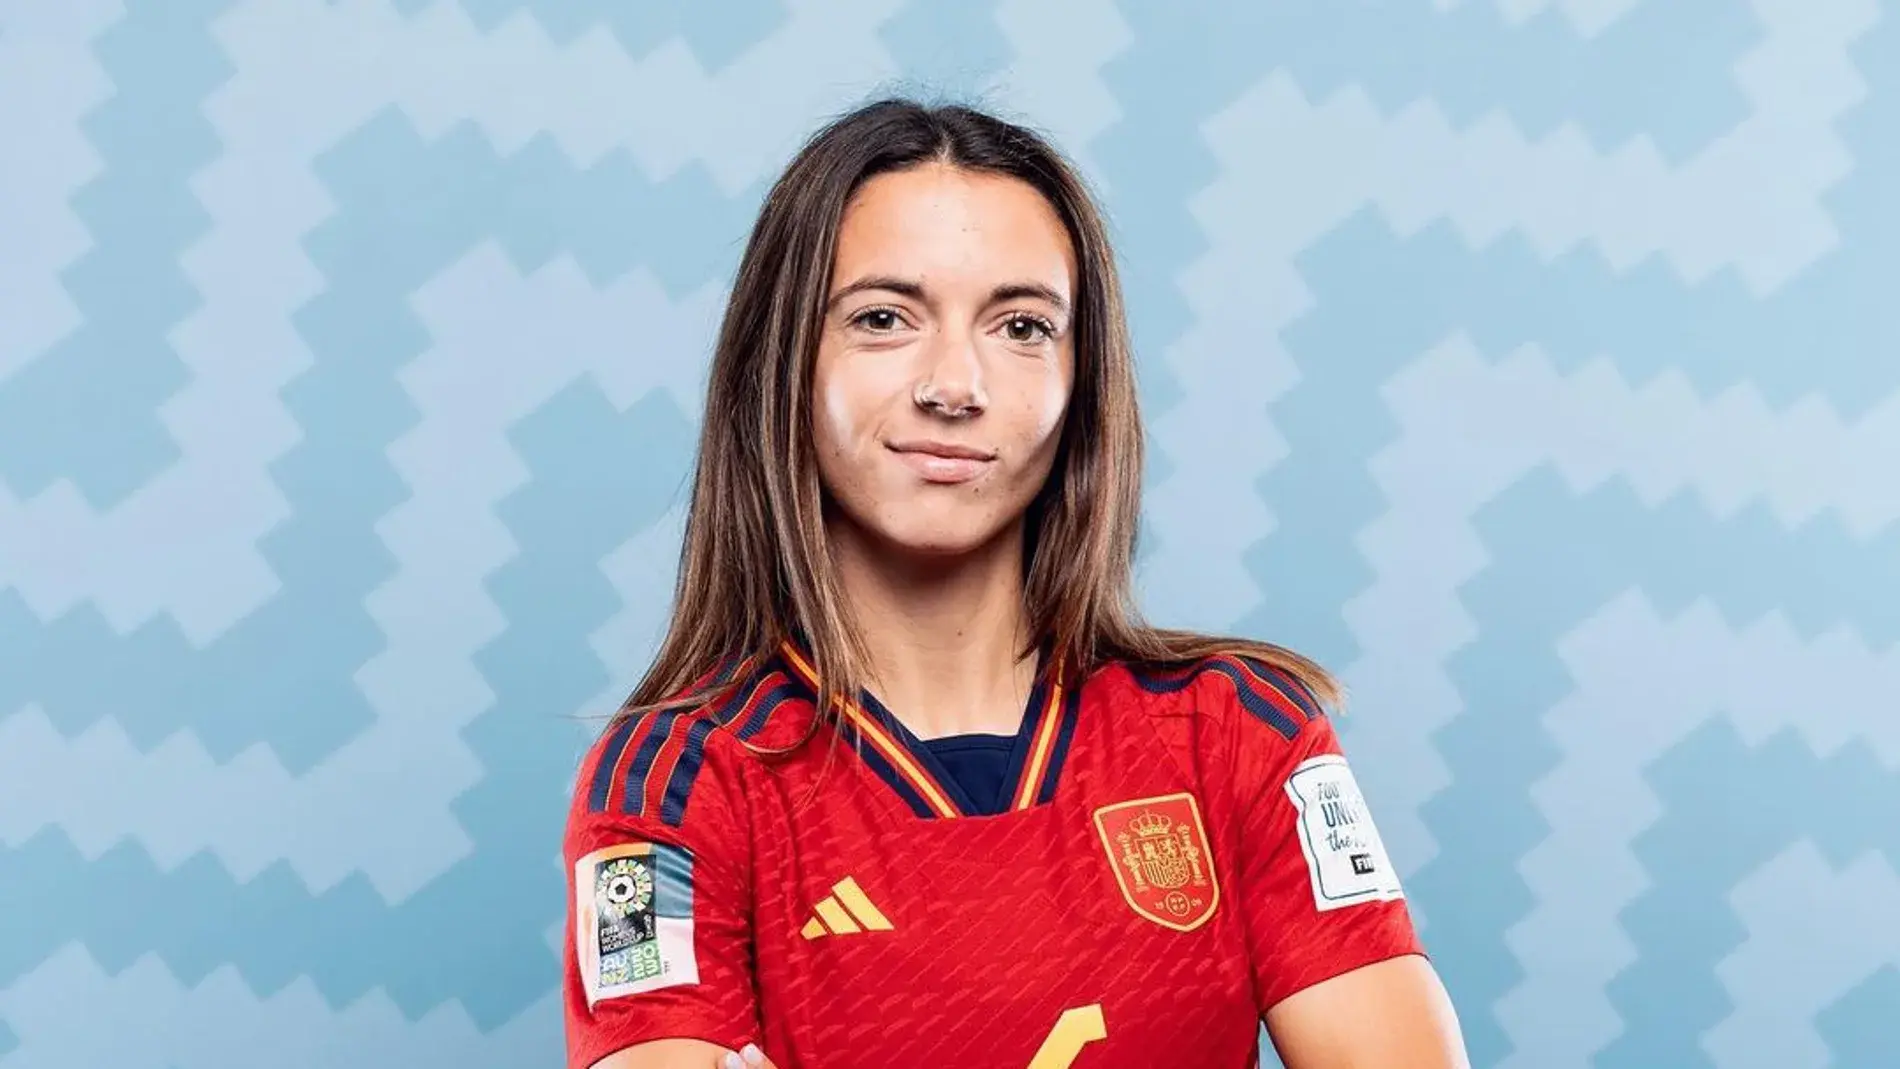 Aitana Bonmatí ruined the World Cup in Spain
	

